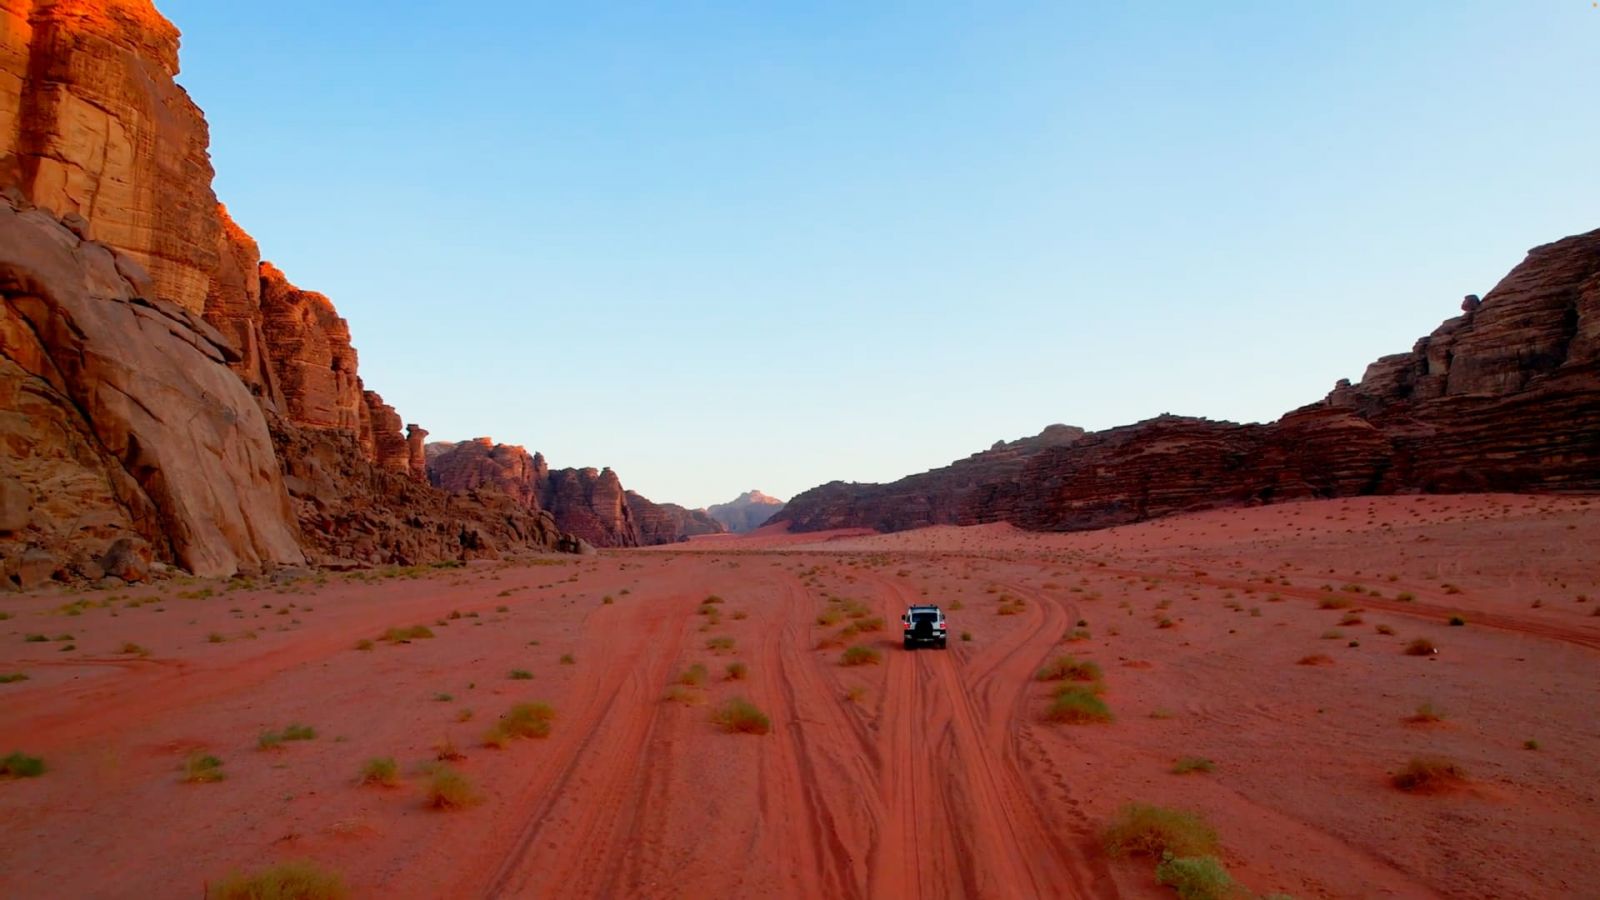 كثرُ يجهلون وجودها.. مصوّر يستكشف رمالًا صحراوية حمراء اللون في السعودية